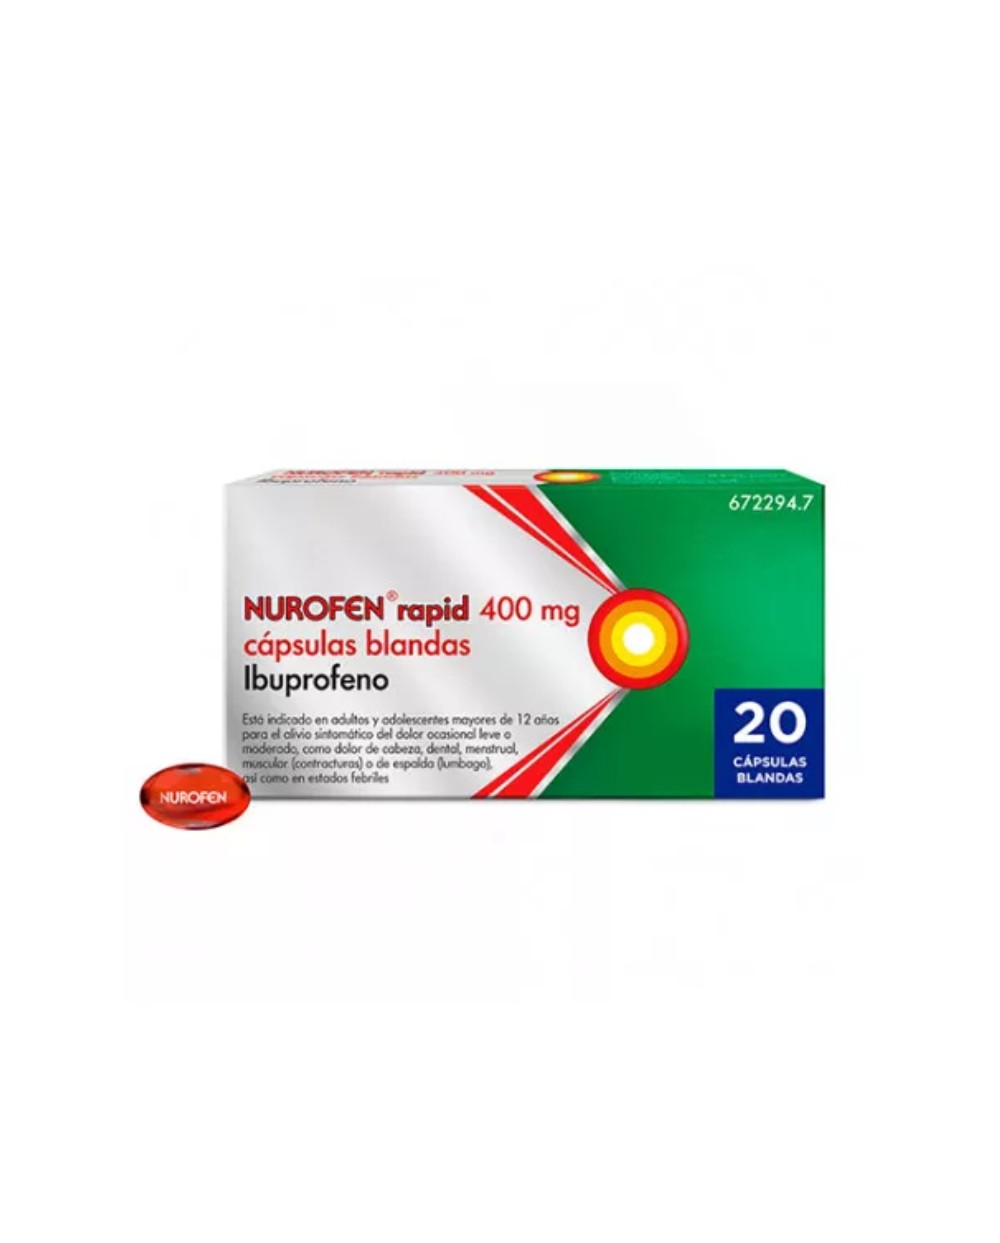 Nurofen Rapid Ibuprofeno 400mg 20 cápsulas blandas